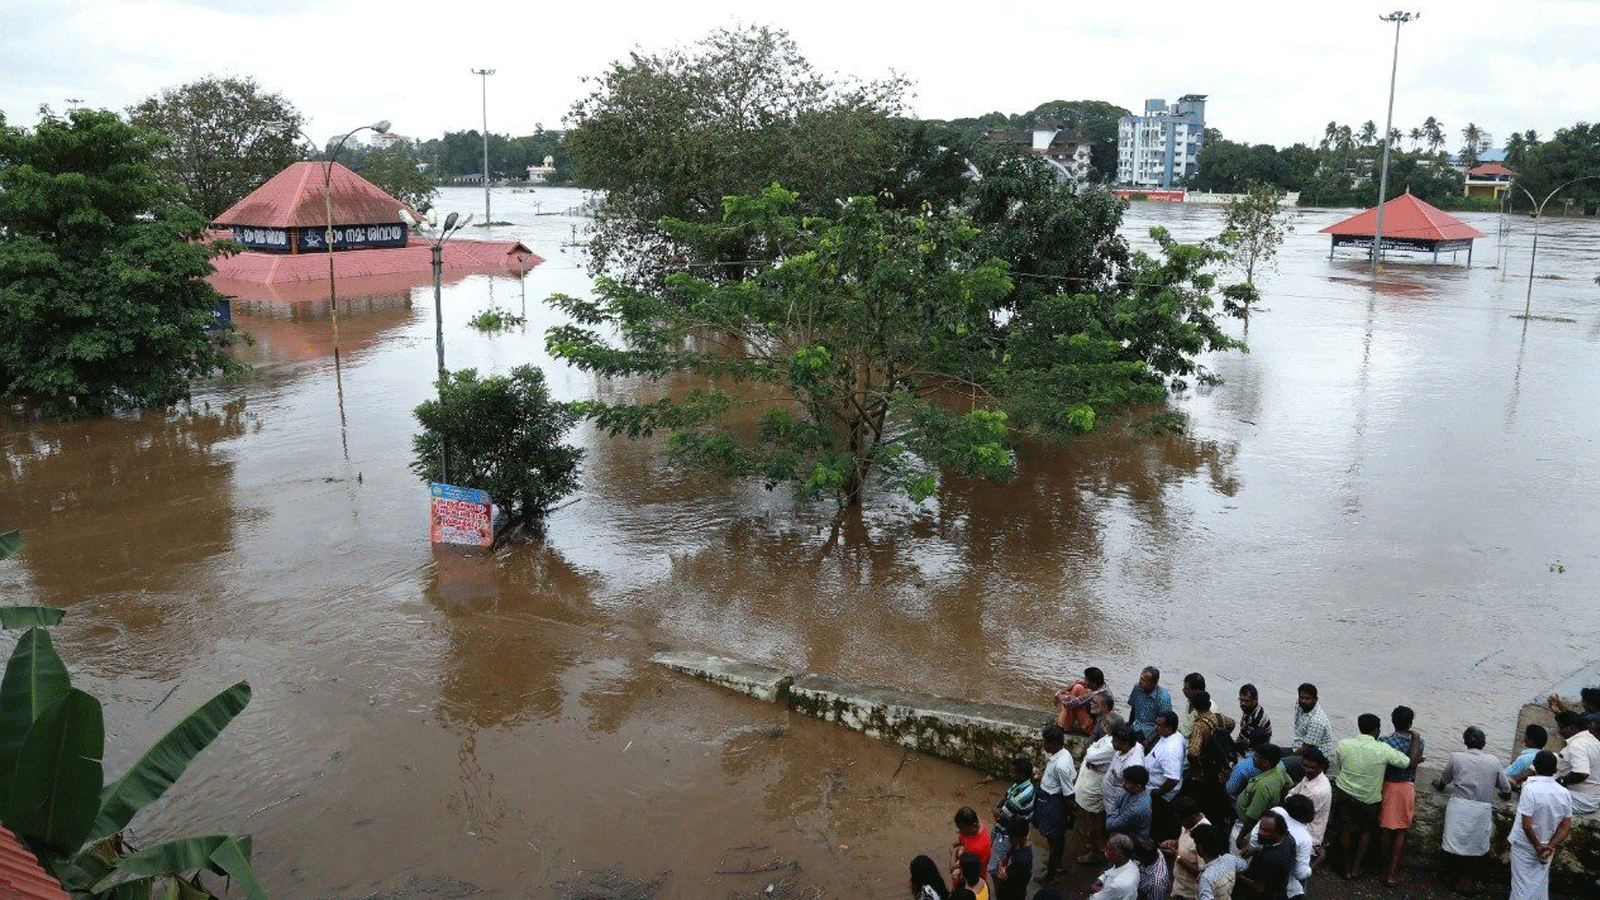 الأمطار الموسمية الغزيرة تتسبب بحدوث فيضانات وانهيارات أرضية في ولاية كيرالا بالهند